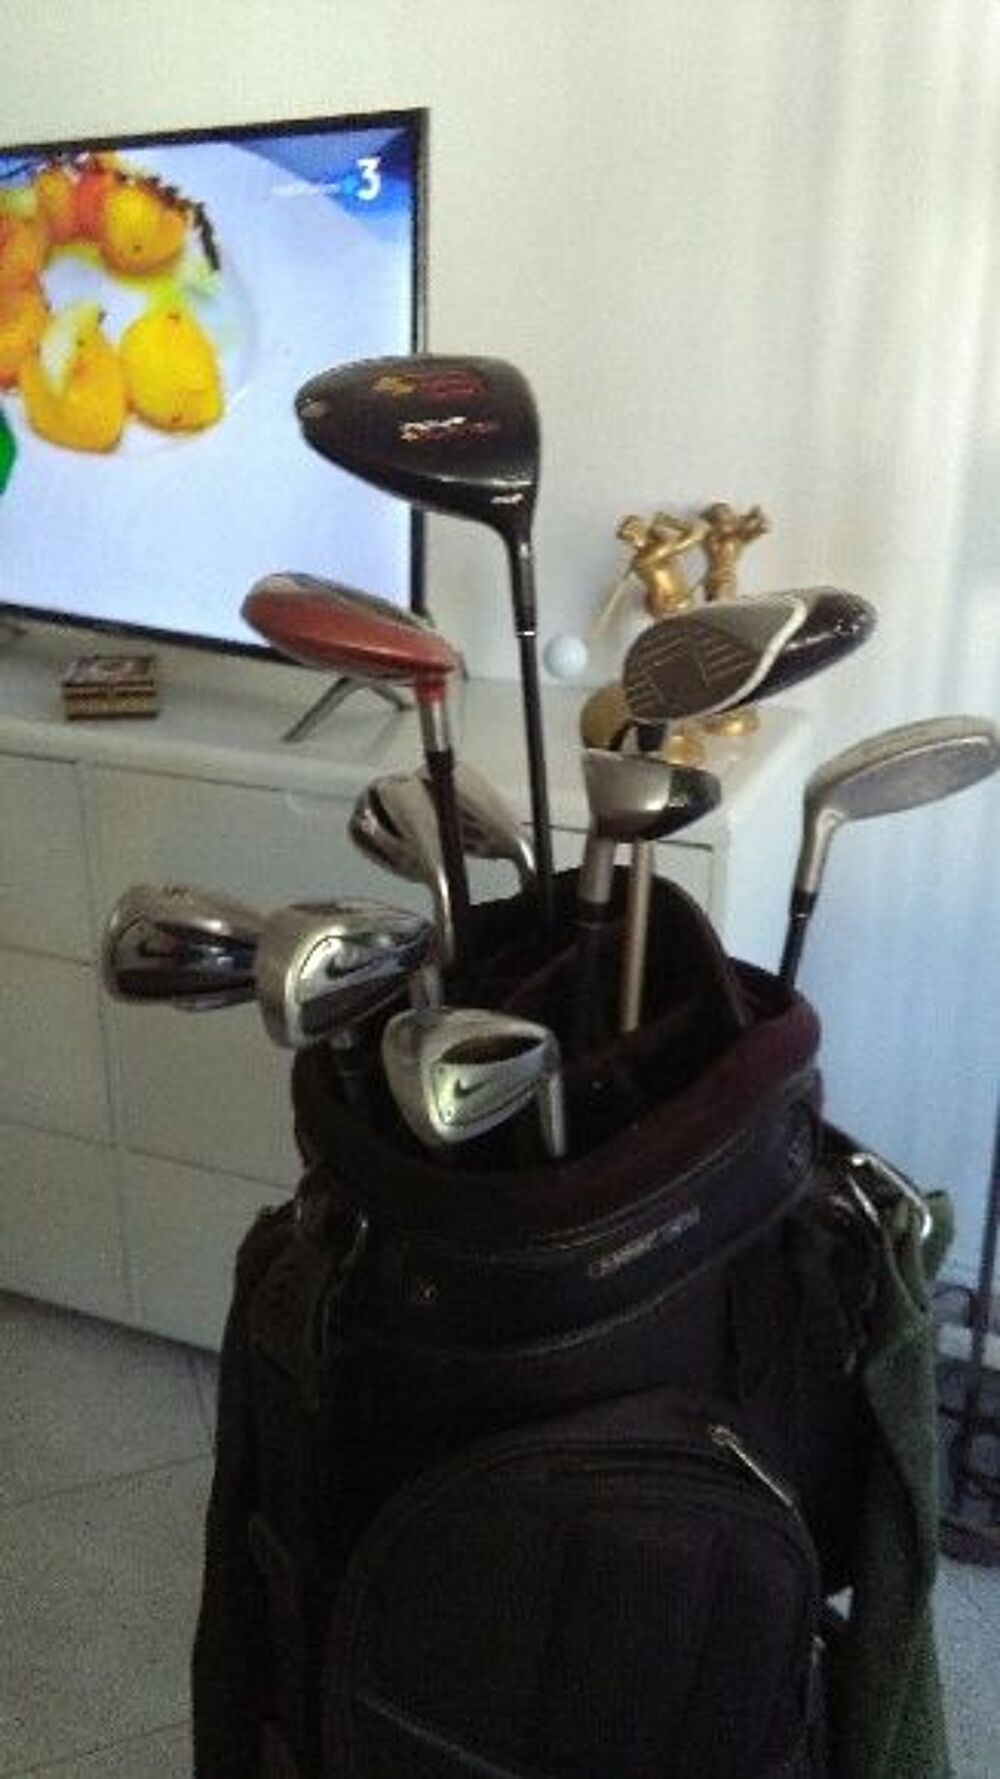 sac complet de golf
Sports